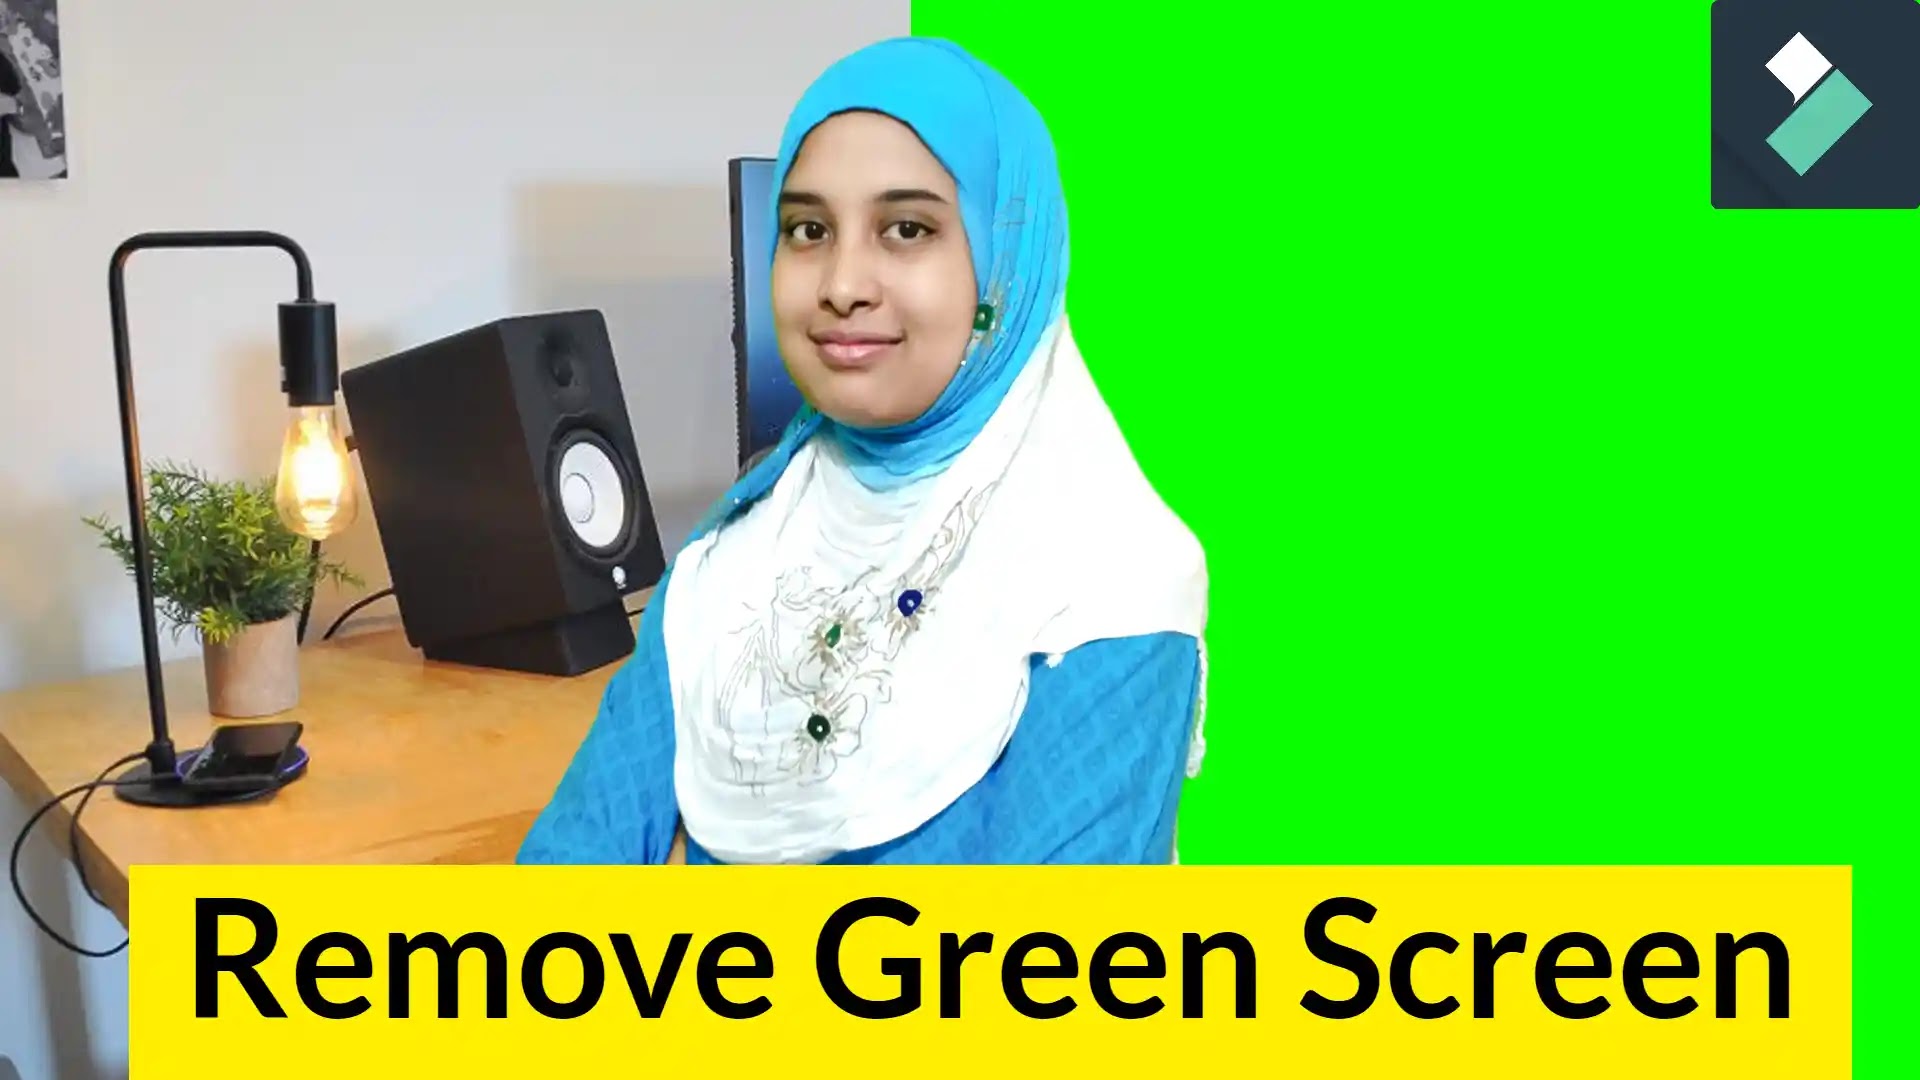 Green Screen Chroma Key là một công nghệ tuyệt vời giúp bạn tạo ra các video với nền đen chuyên nghiệp. Với công nghệ này, bạn có thể thêm bất kỳ hình ảnh hoặc video nào vào nền đen và tạo ra những sản phẩm video độc đáo và ấn tượng.